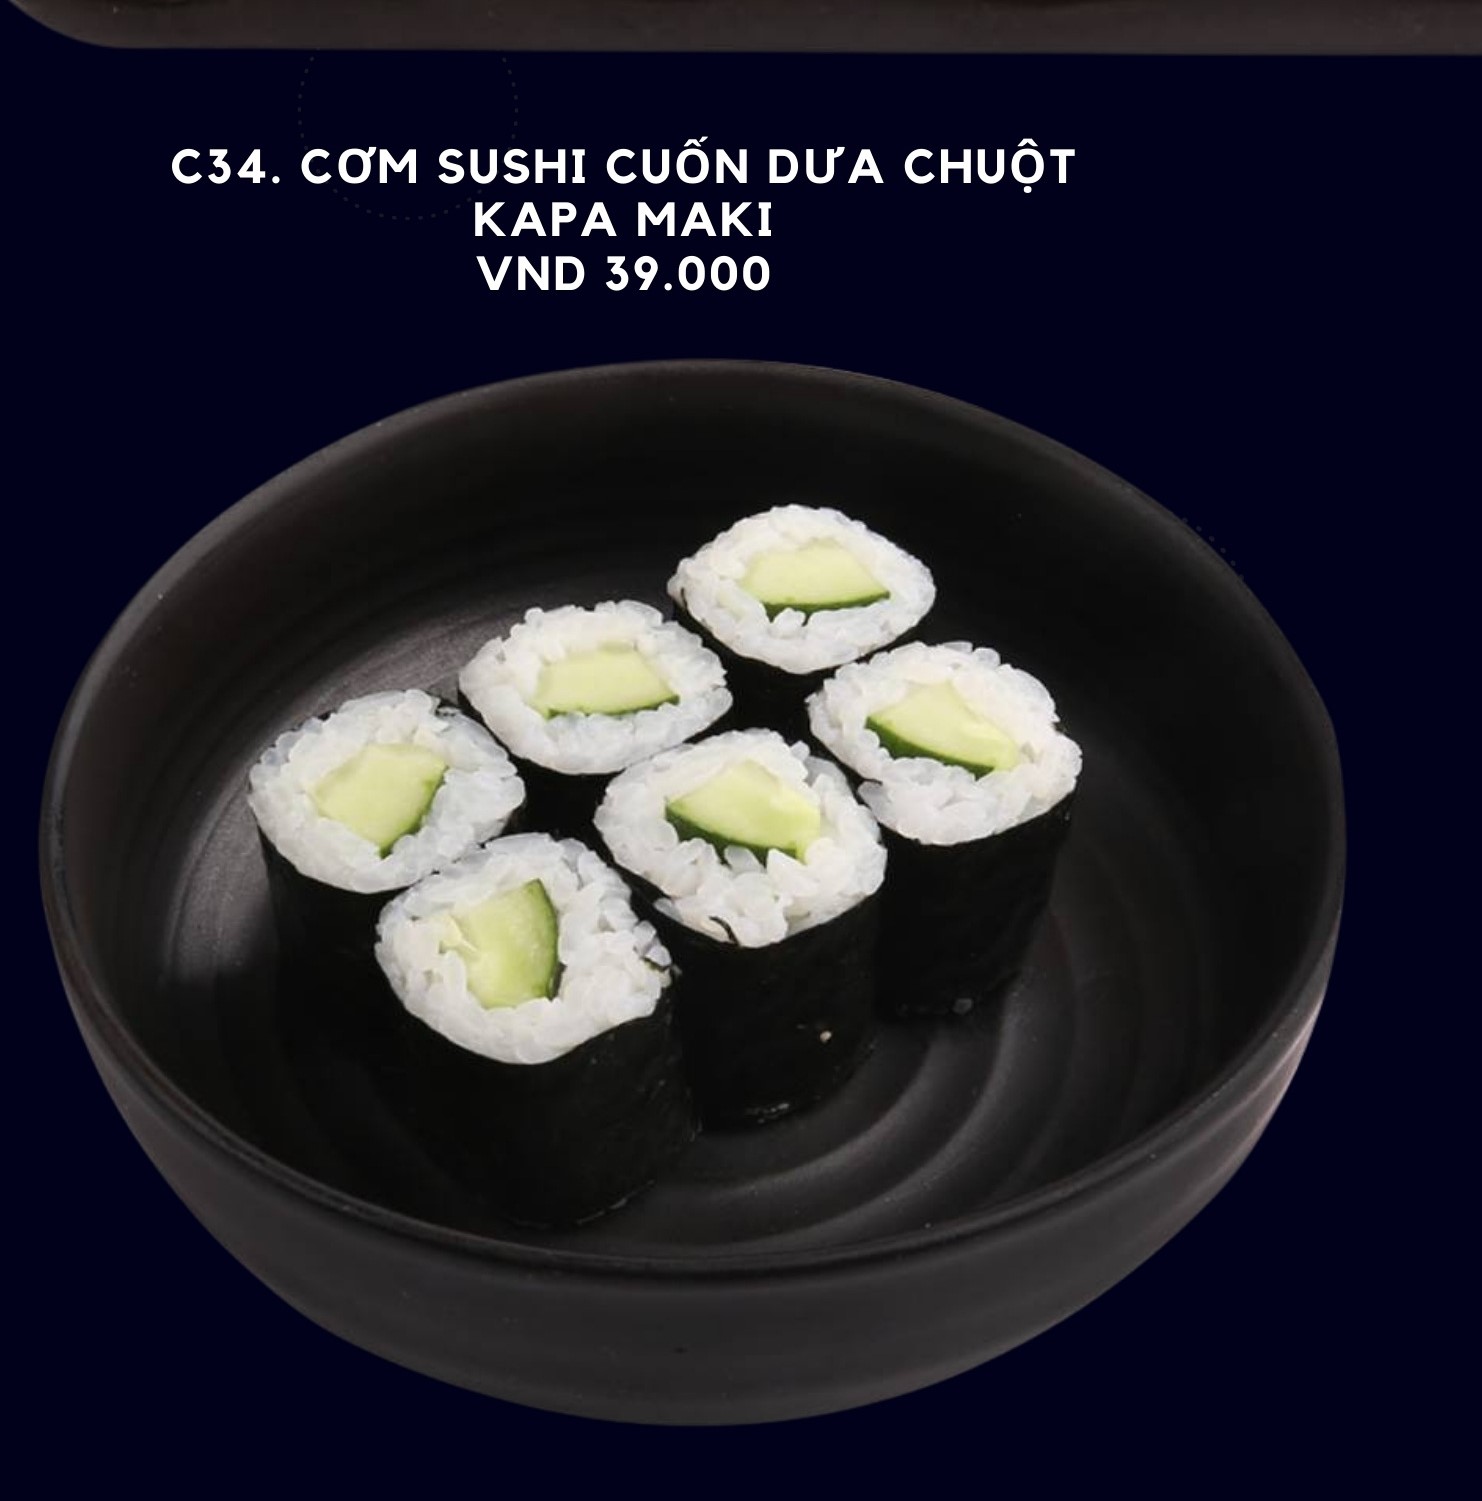 C34. Cơm sushi cuốn dưa chuột Kapa maki